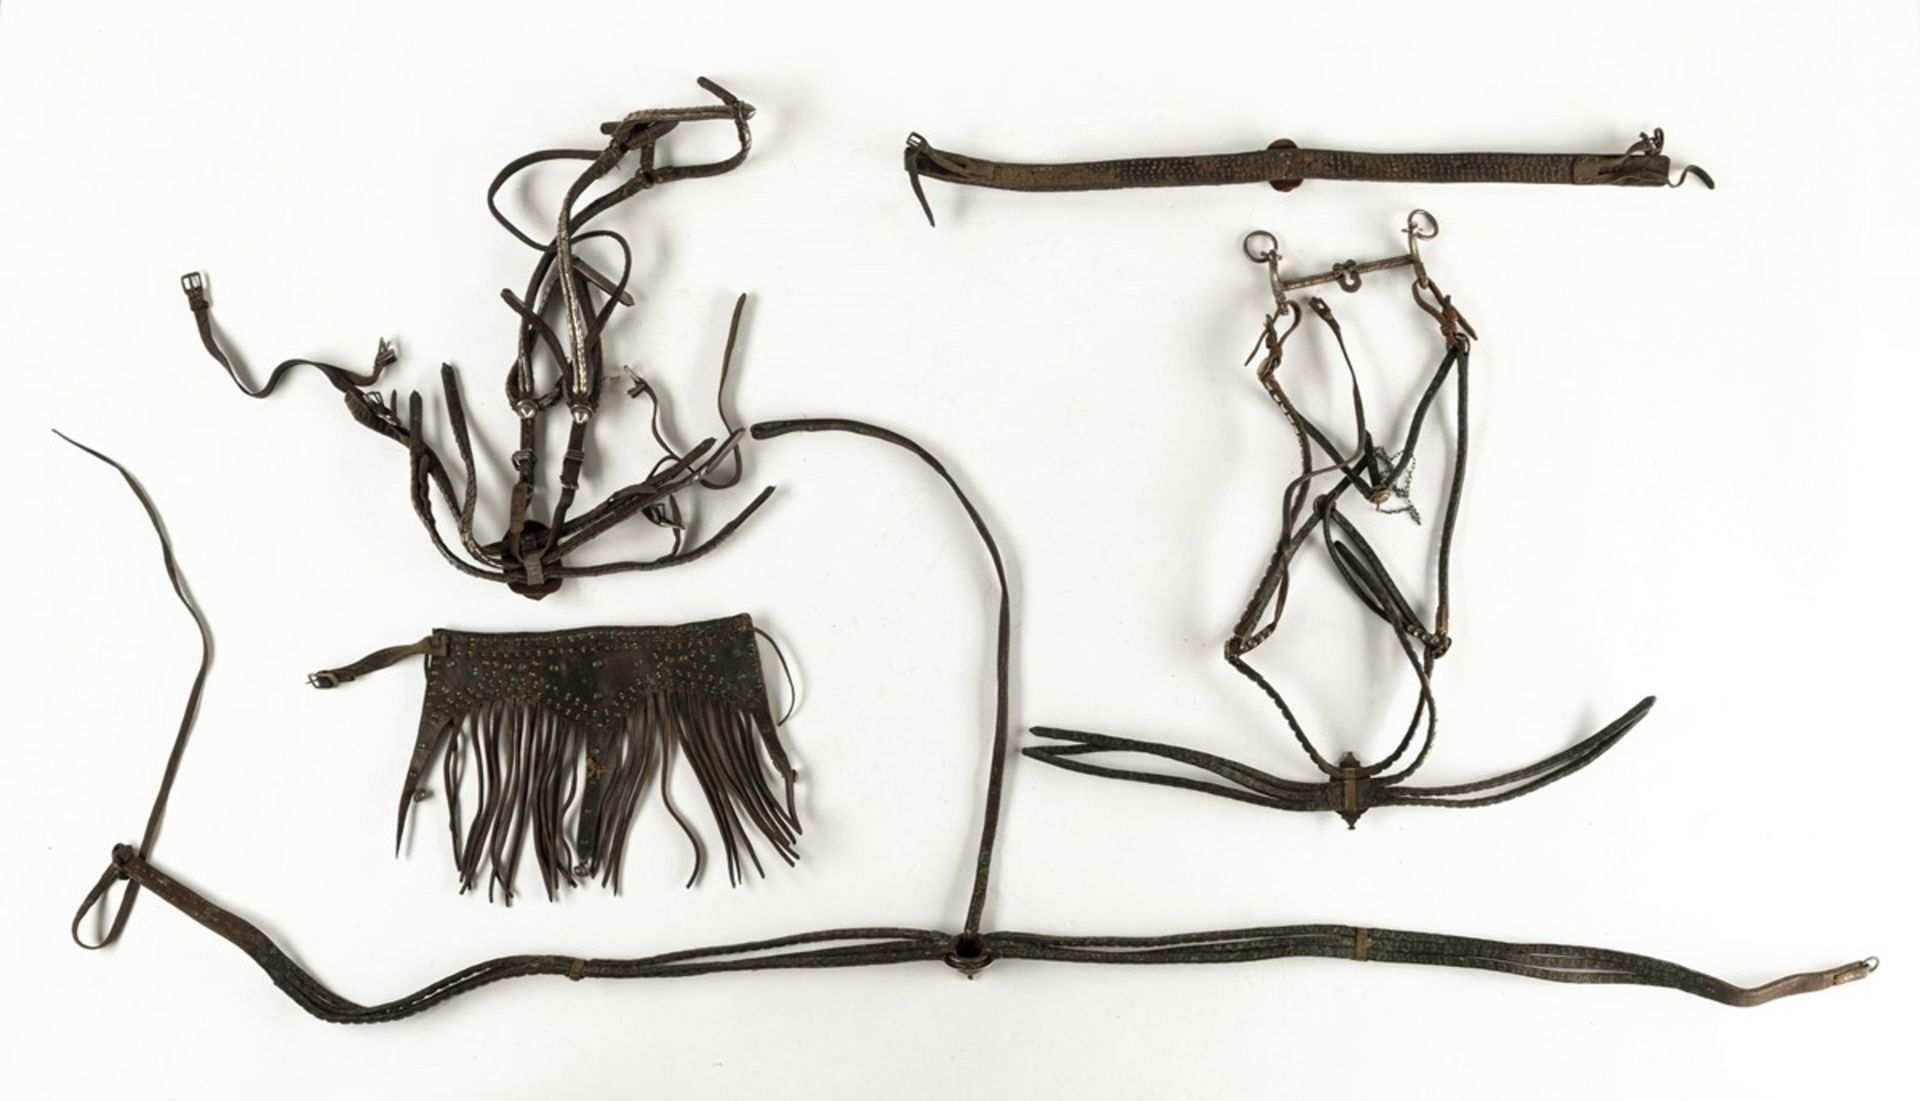 Fünf Teile Pferdeschmuck, u.a. Kopfschmuck mit Trensen und Halschmuck - Bild 2 aus 2